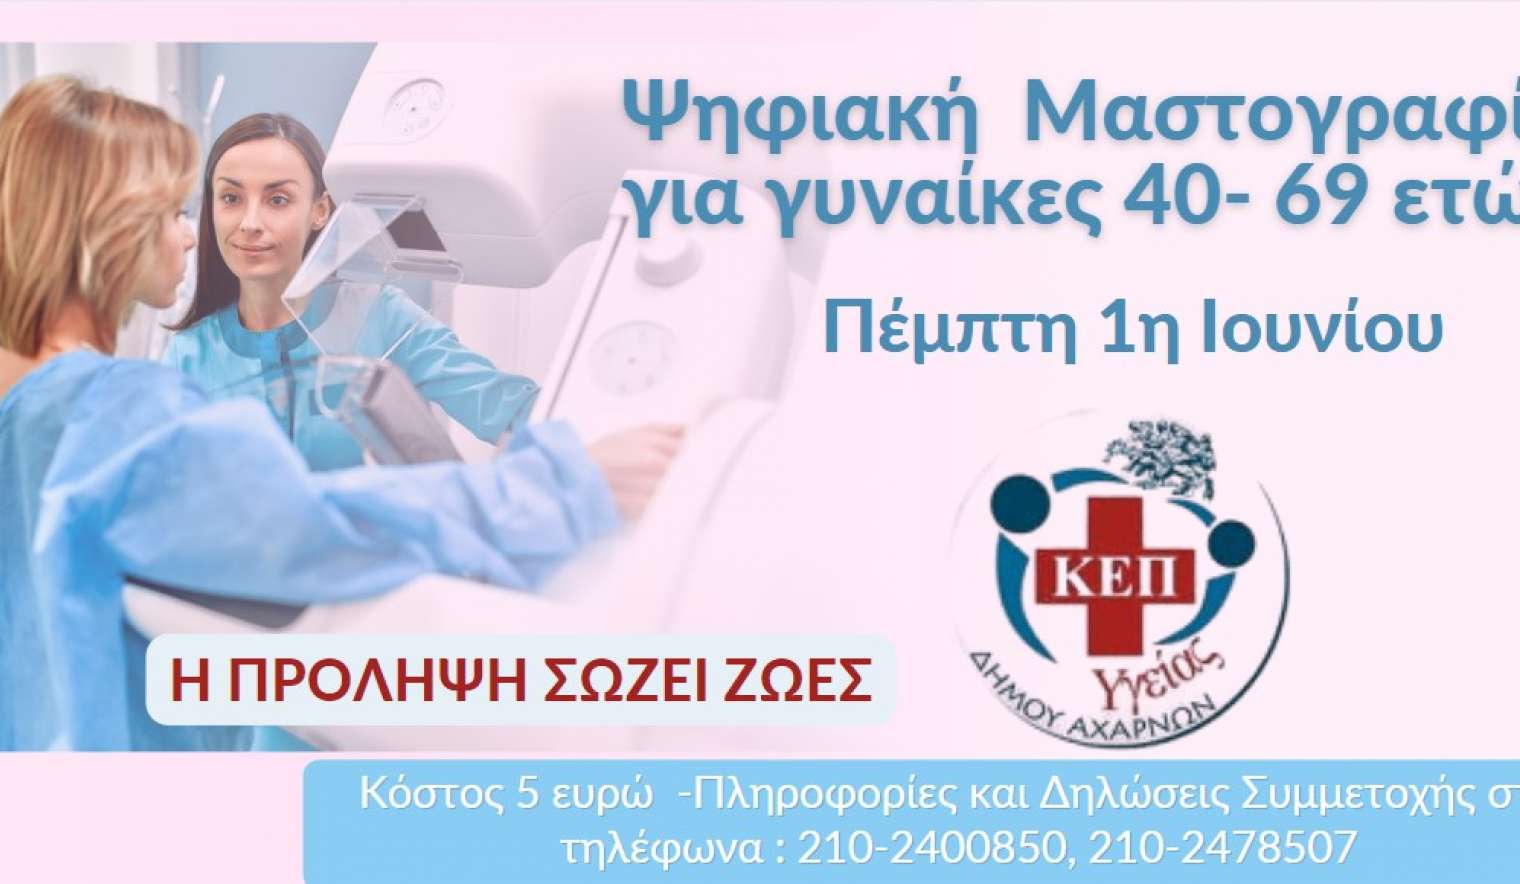 Ψηφιακή μαστογραφία για τα μέλη του ΚΕΠ Υγείας του Δήμου Αχαρνών την Πέμπτη 1η Ιουνίου